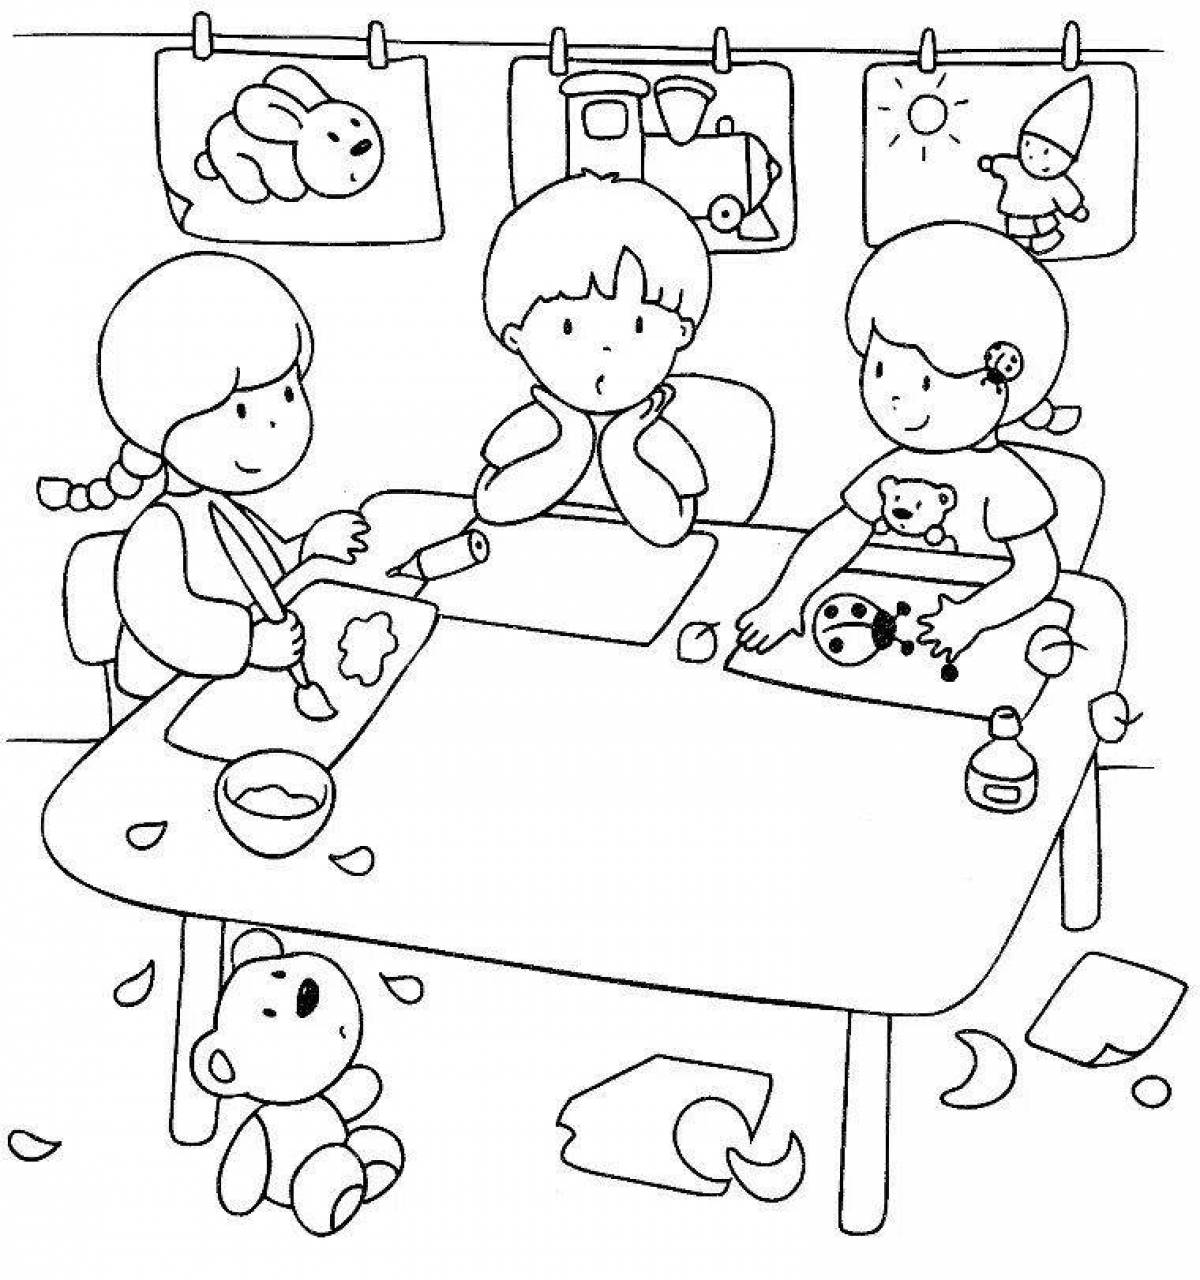 Crazy coloring book children play in kindergarten